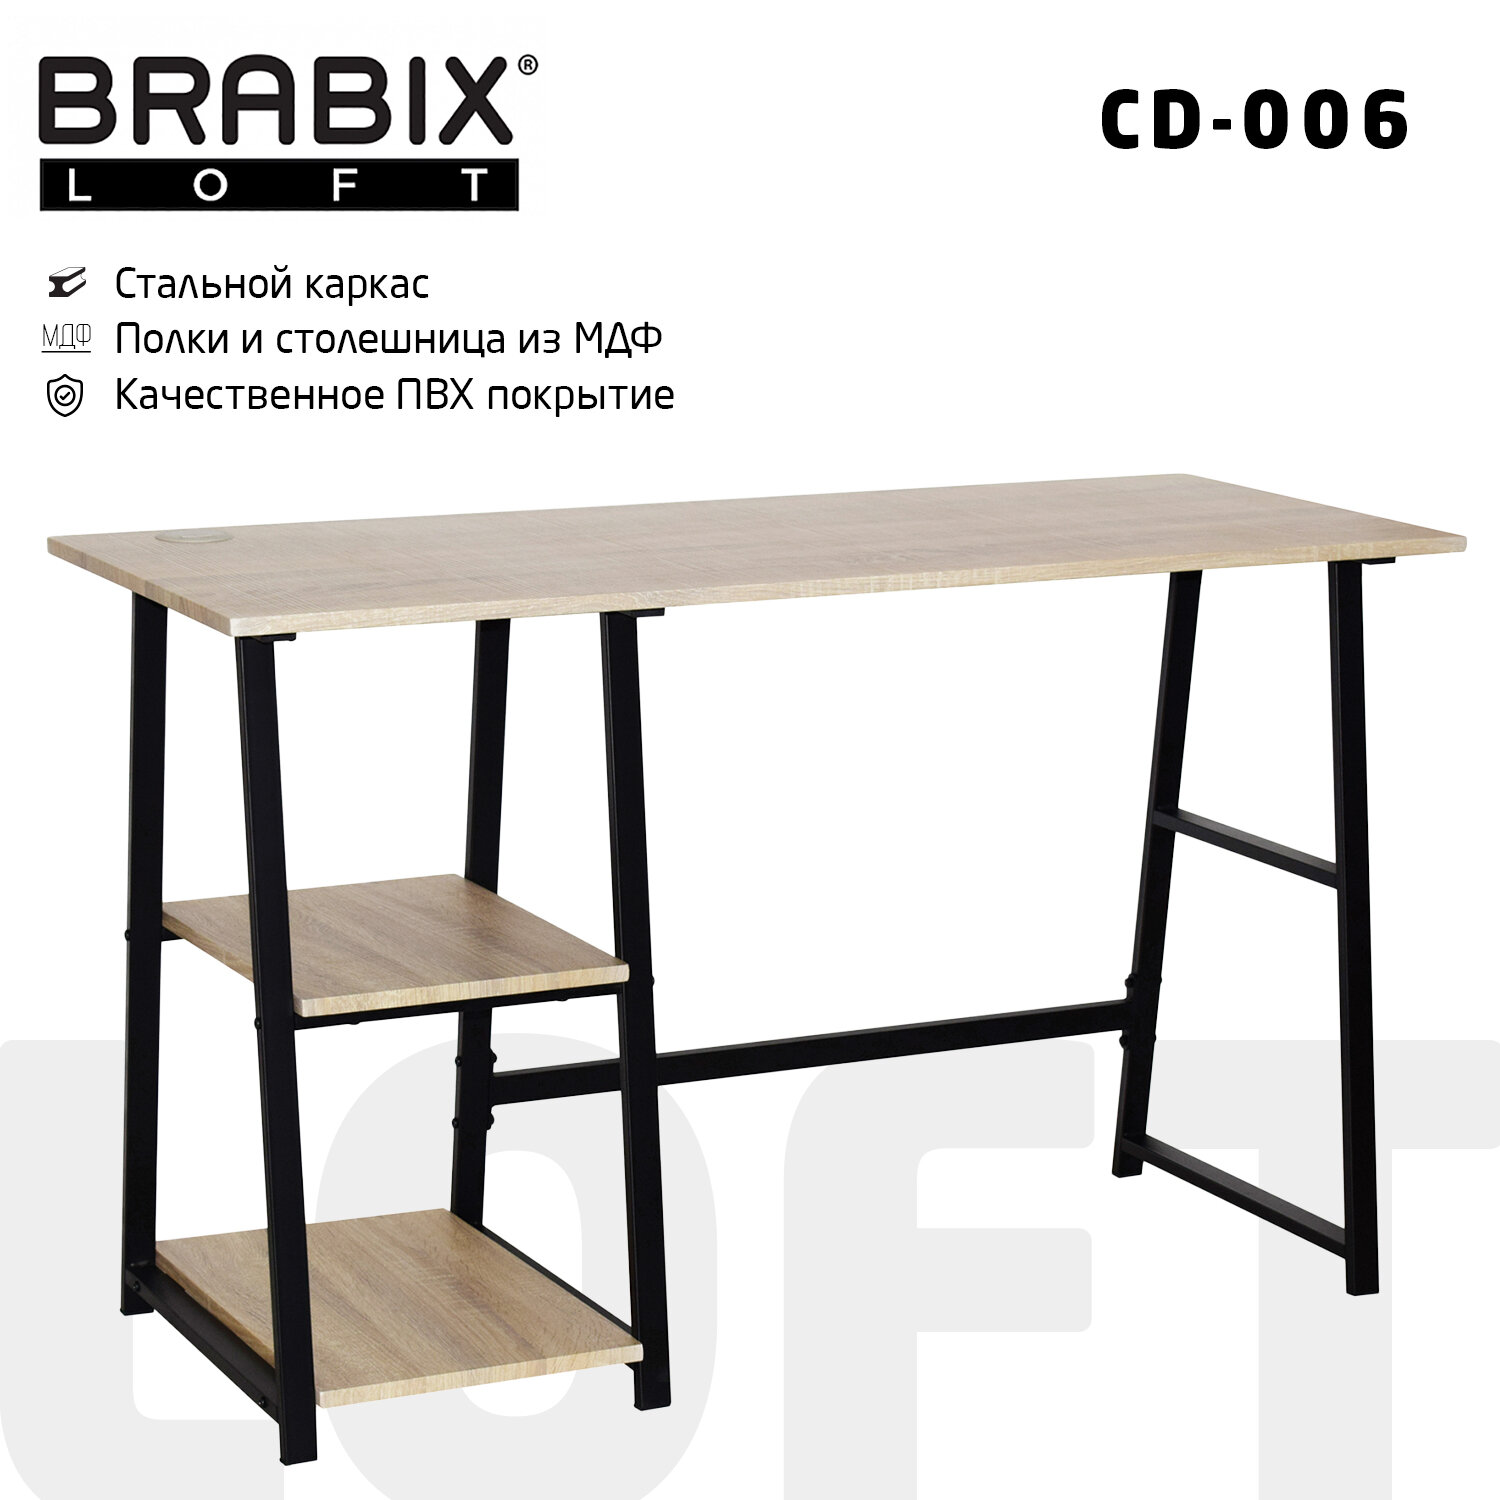 Стол Brabix Loft CD-006